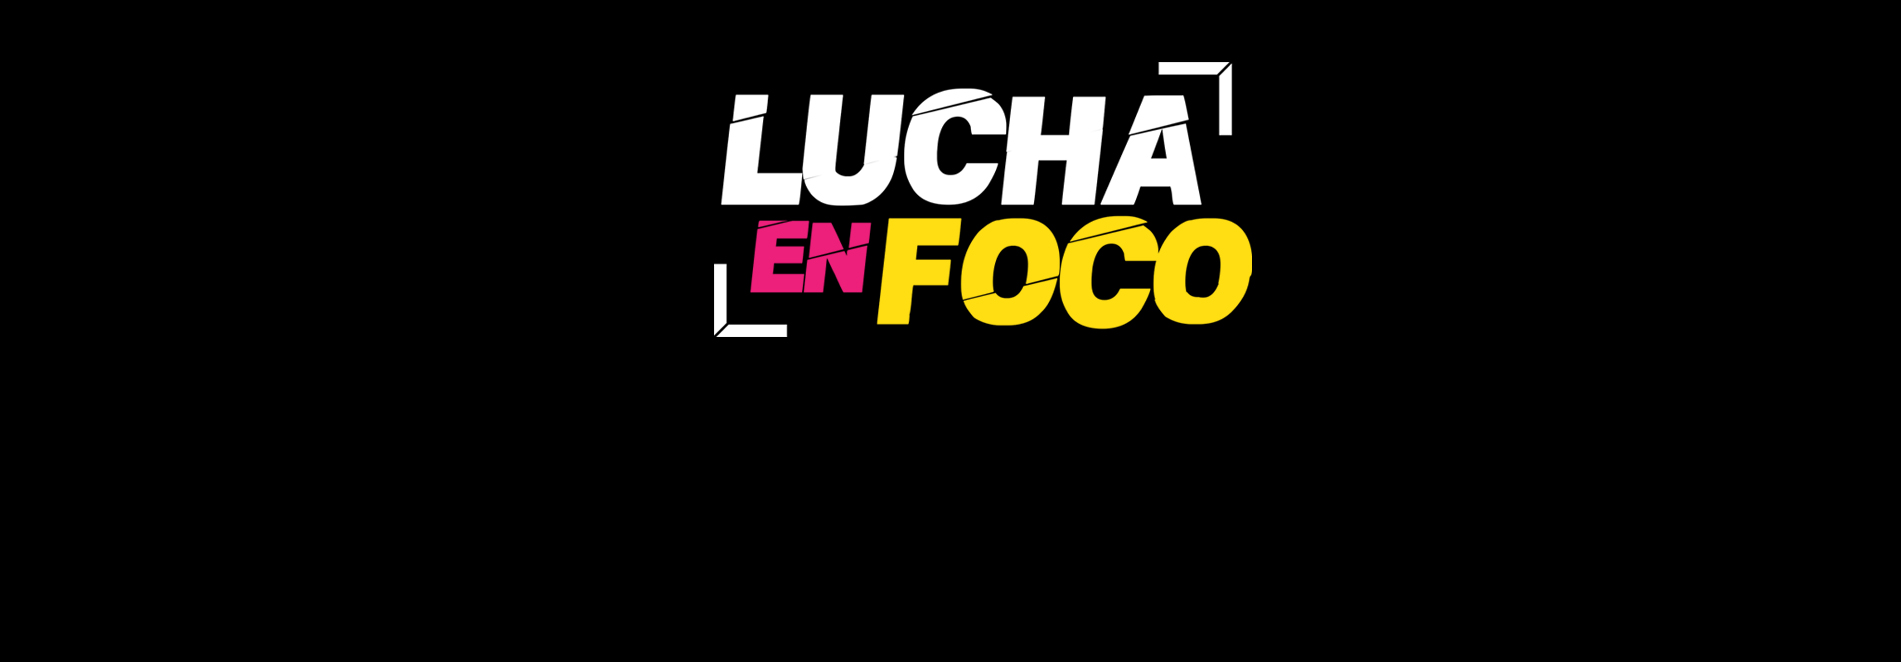 #LuchaEnFoco: Concurso de Fotografía